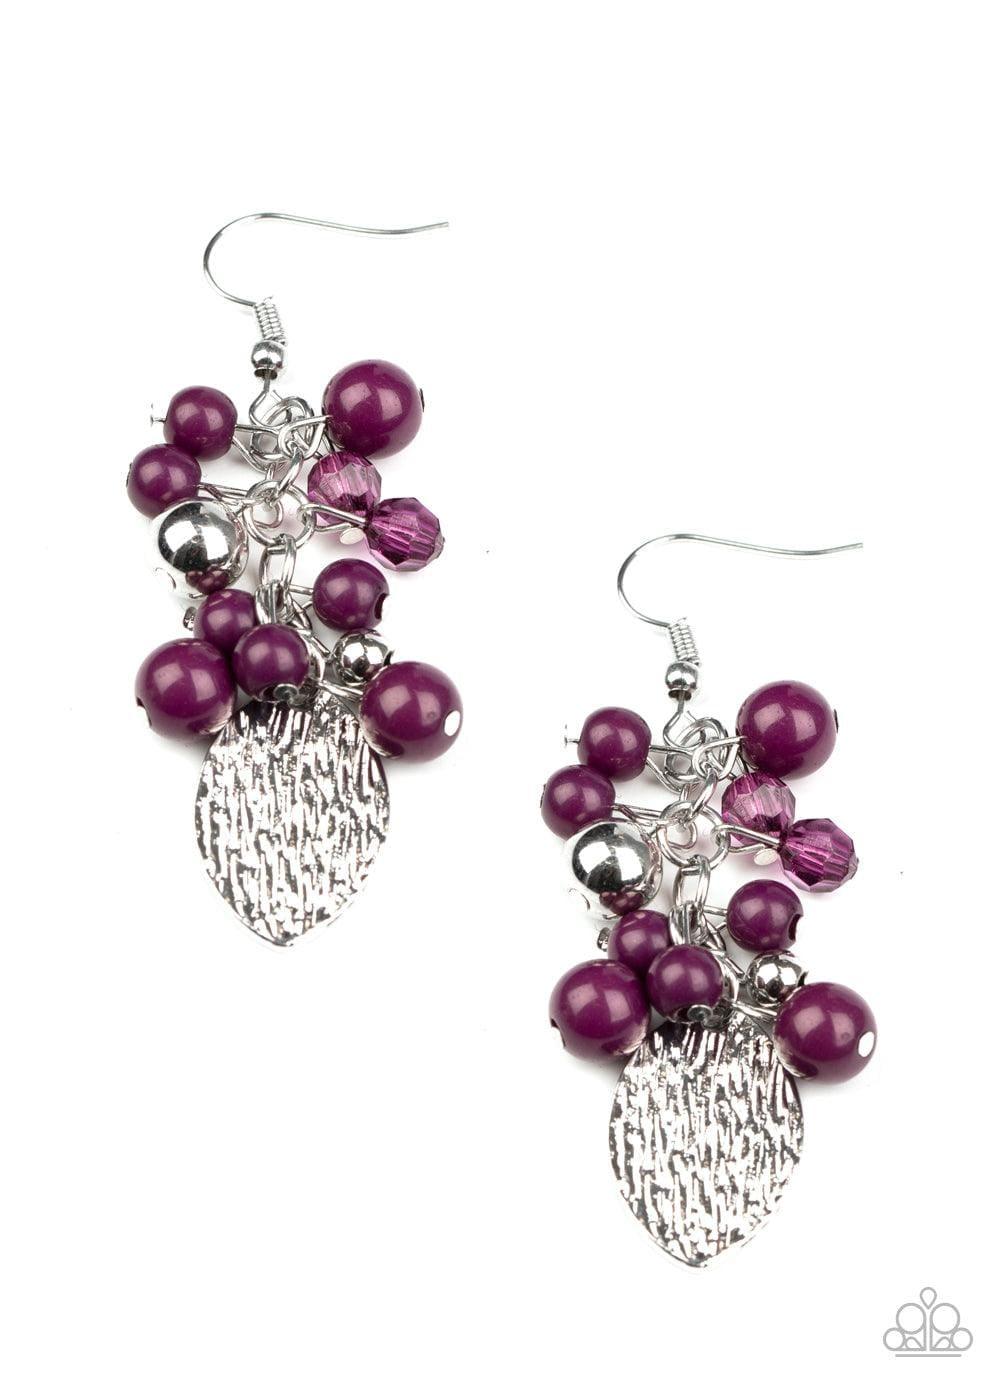 Paparazzi Accessories - Fruity Finesse - Purple Earrings - Bling by JessieK